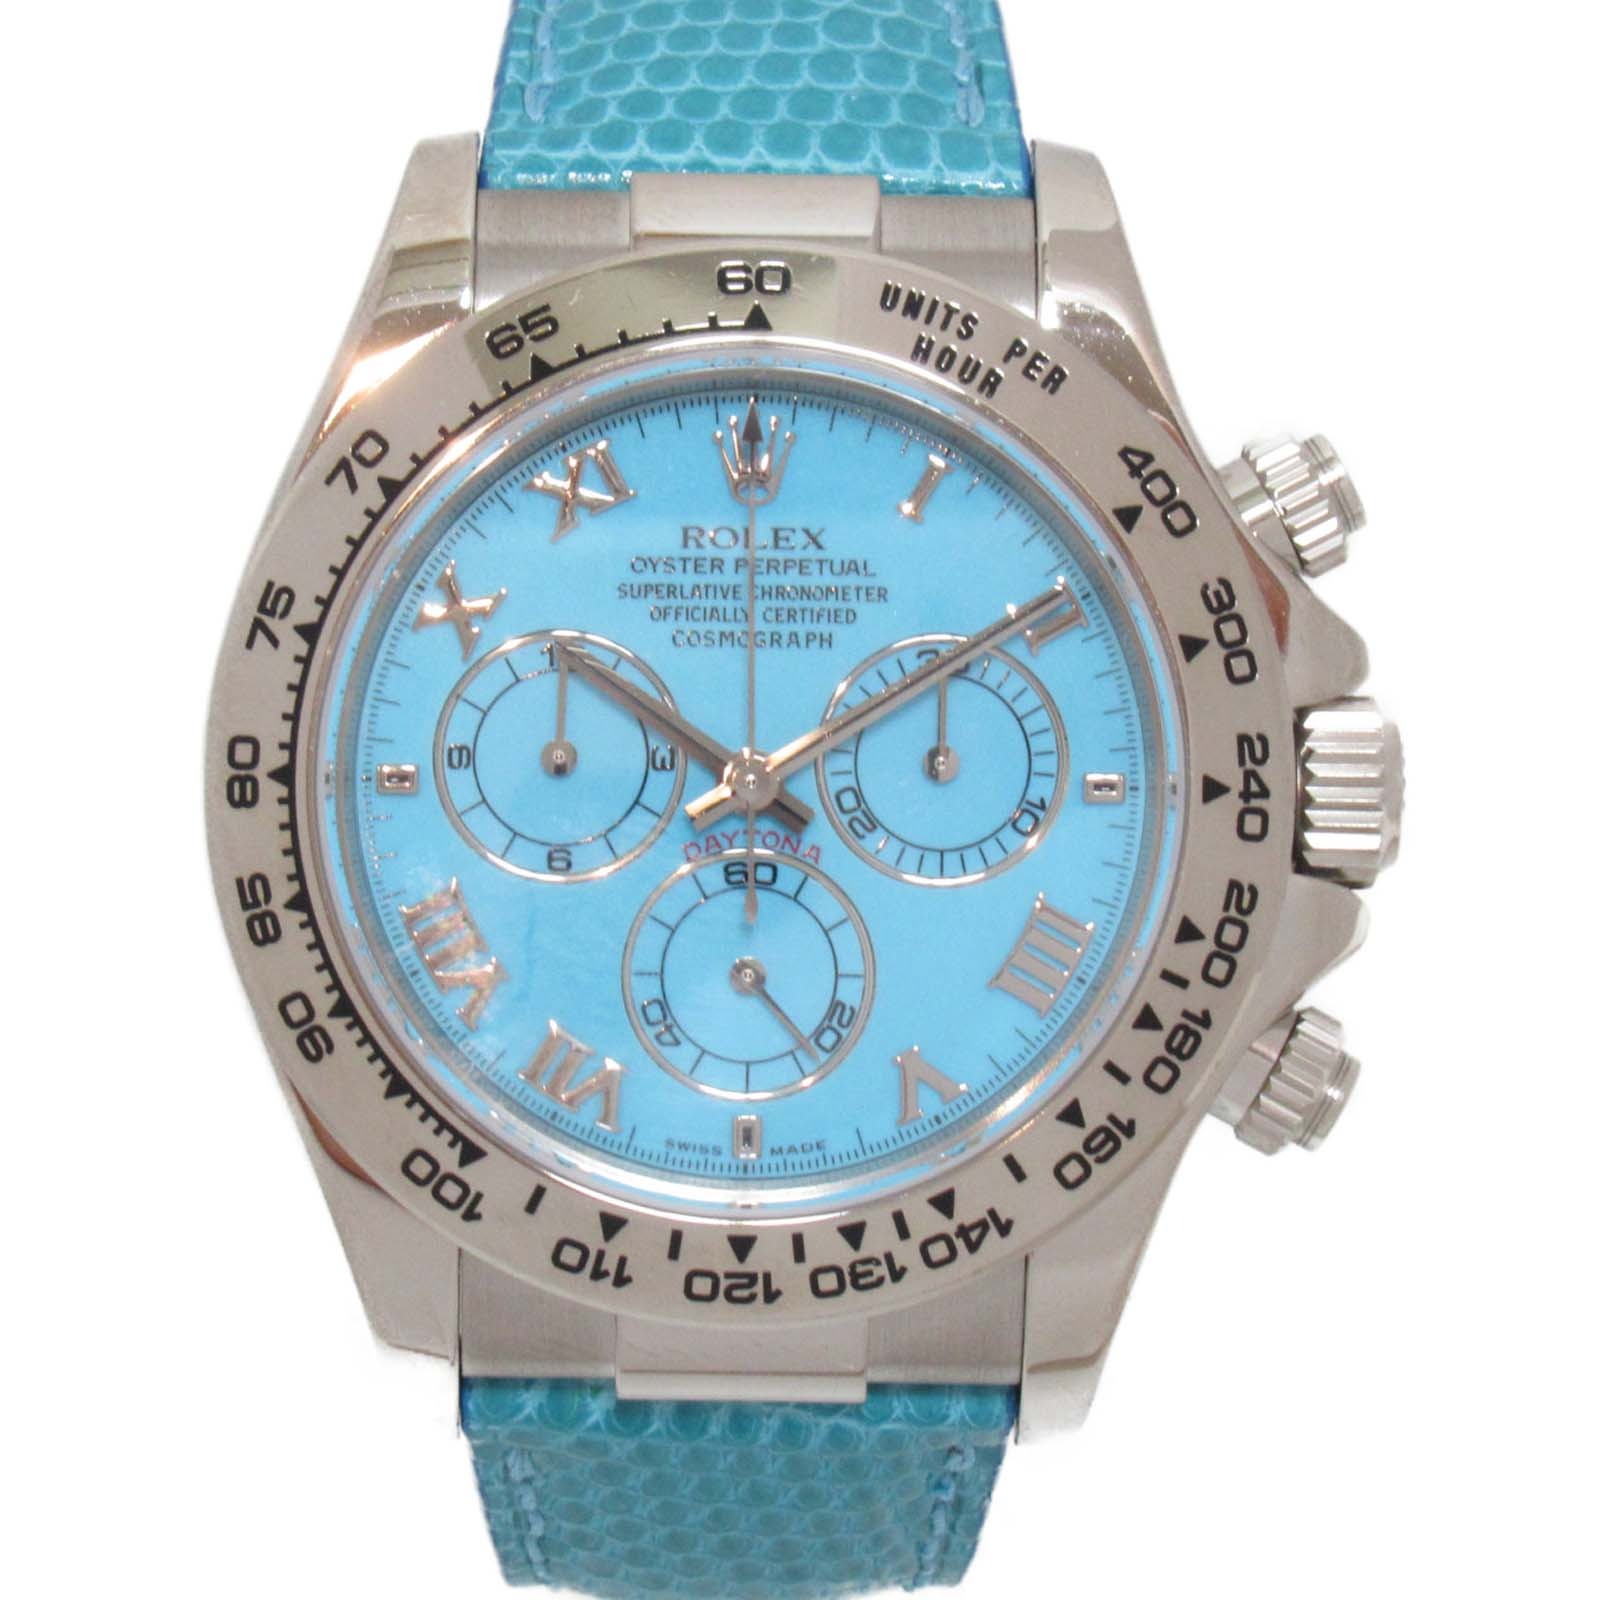 ロレックス ROLEX デイトナビーチ 腕時計 腕時計 時計 ステンレススチール リザードベルト メンズ ブルー系 ブルー 116519 【中古】